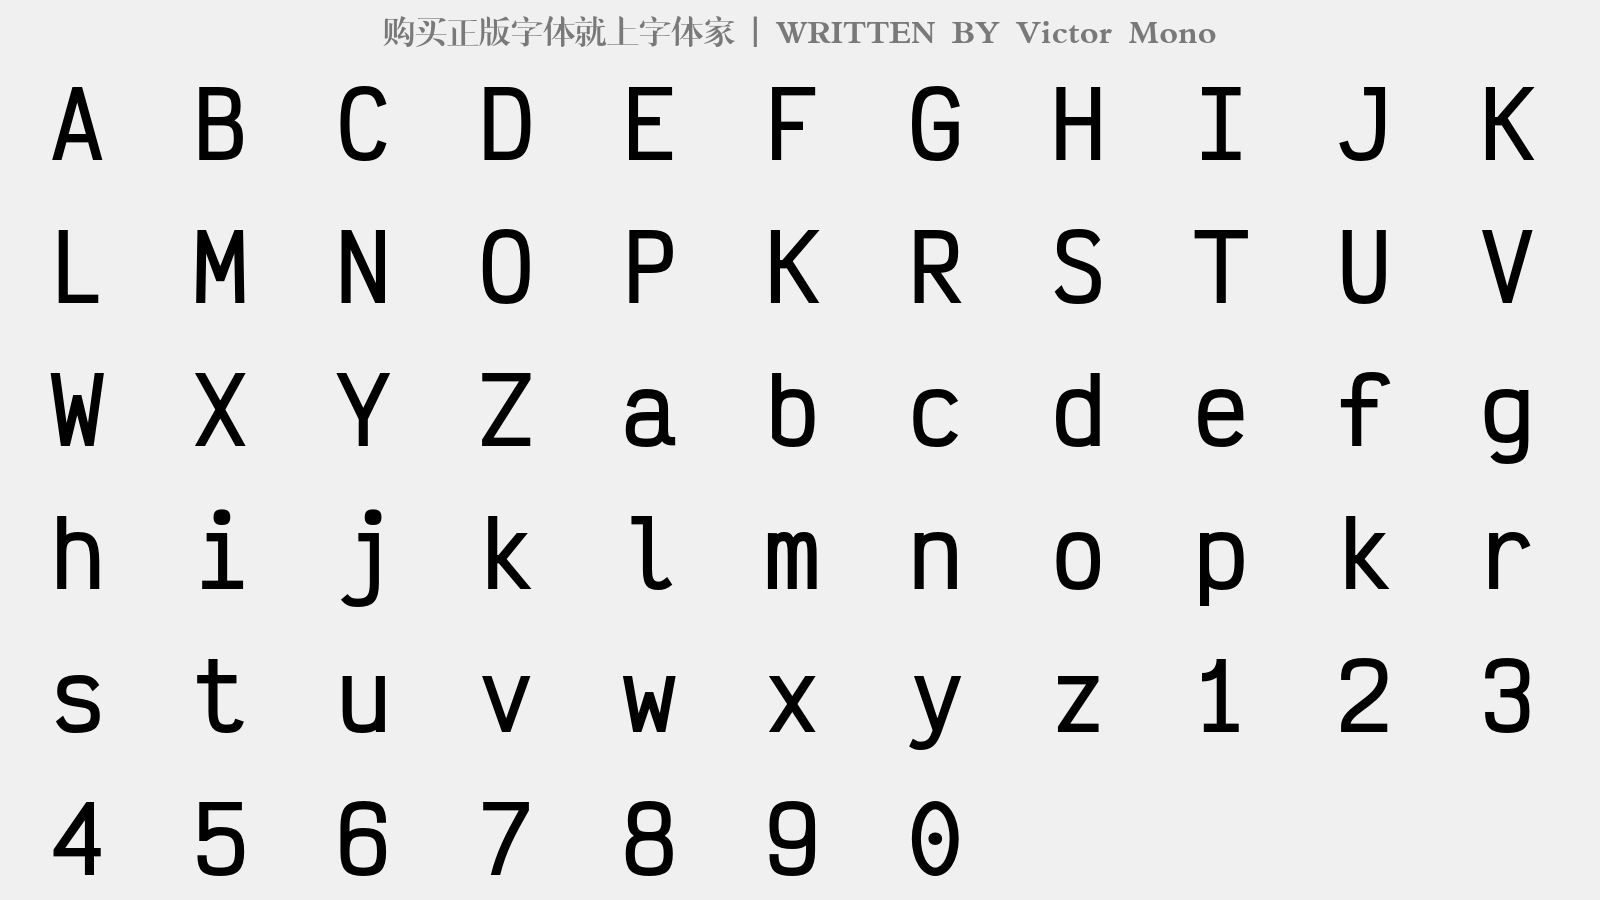 Victor Mono - 大写字母/小写字母/数字